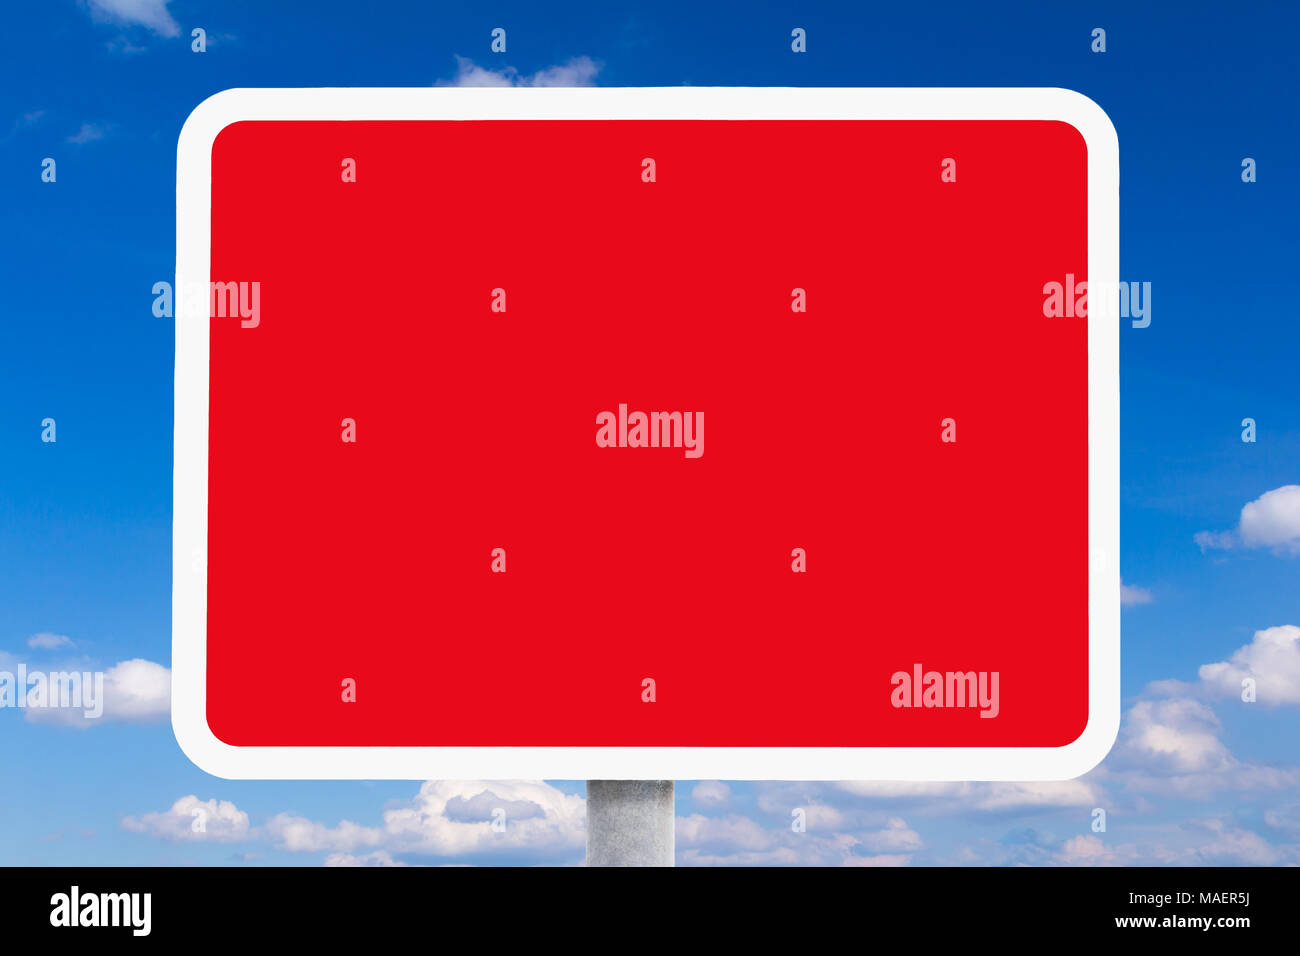 Leere Felder oder roten und weißen britischen Schild vor einem blauen Himmel mit einigen weissen Wolken, symolising ein Sicherheitsrisiko, Risiko, Gefahr, Hintergrund te Stockfoto